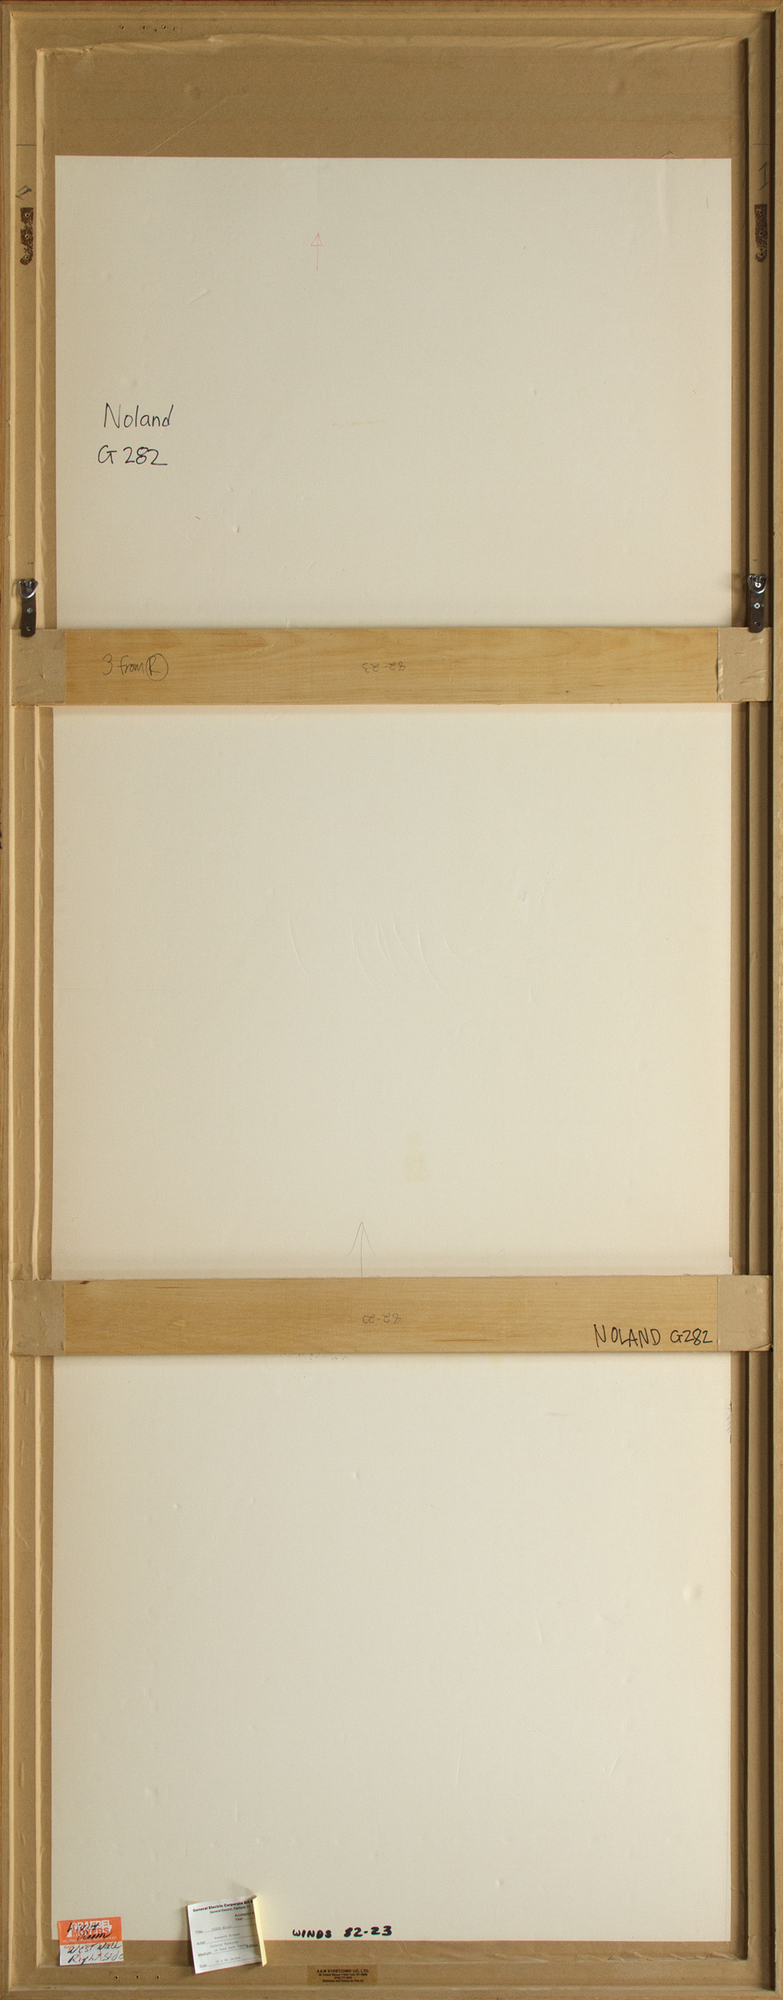 קנת נולנד - רוחות 82-23 - מונוטיפ צבוע על נייר בעבודת יד - 86 1/2 x 31 3/8 אינץ'.